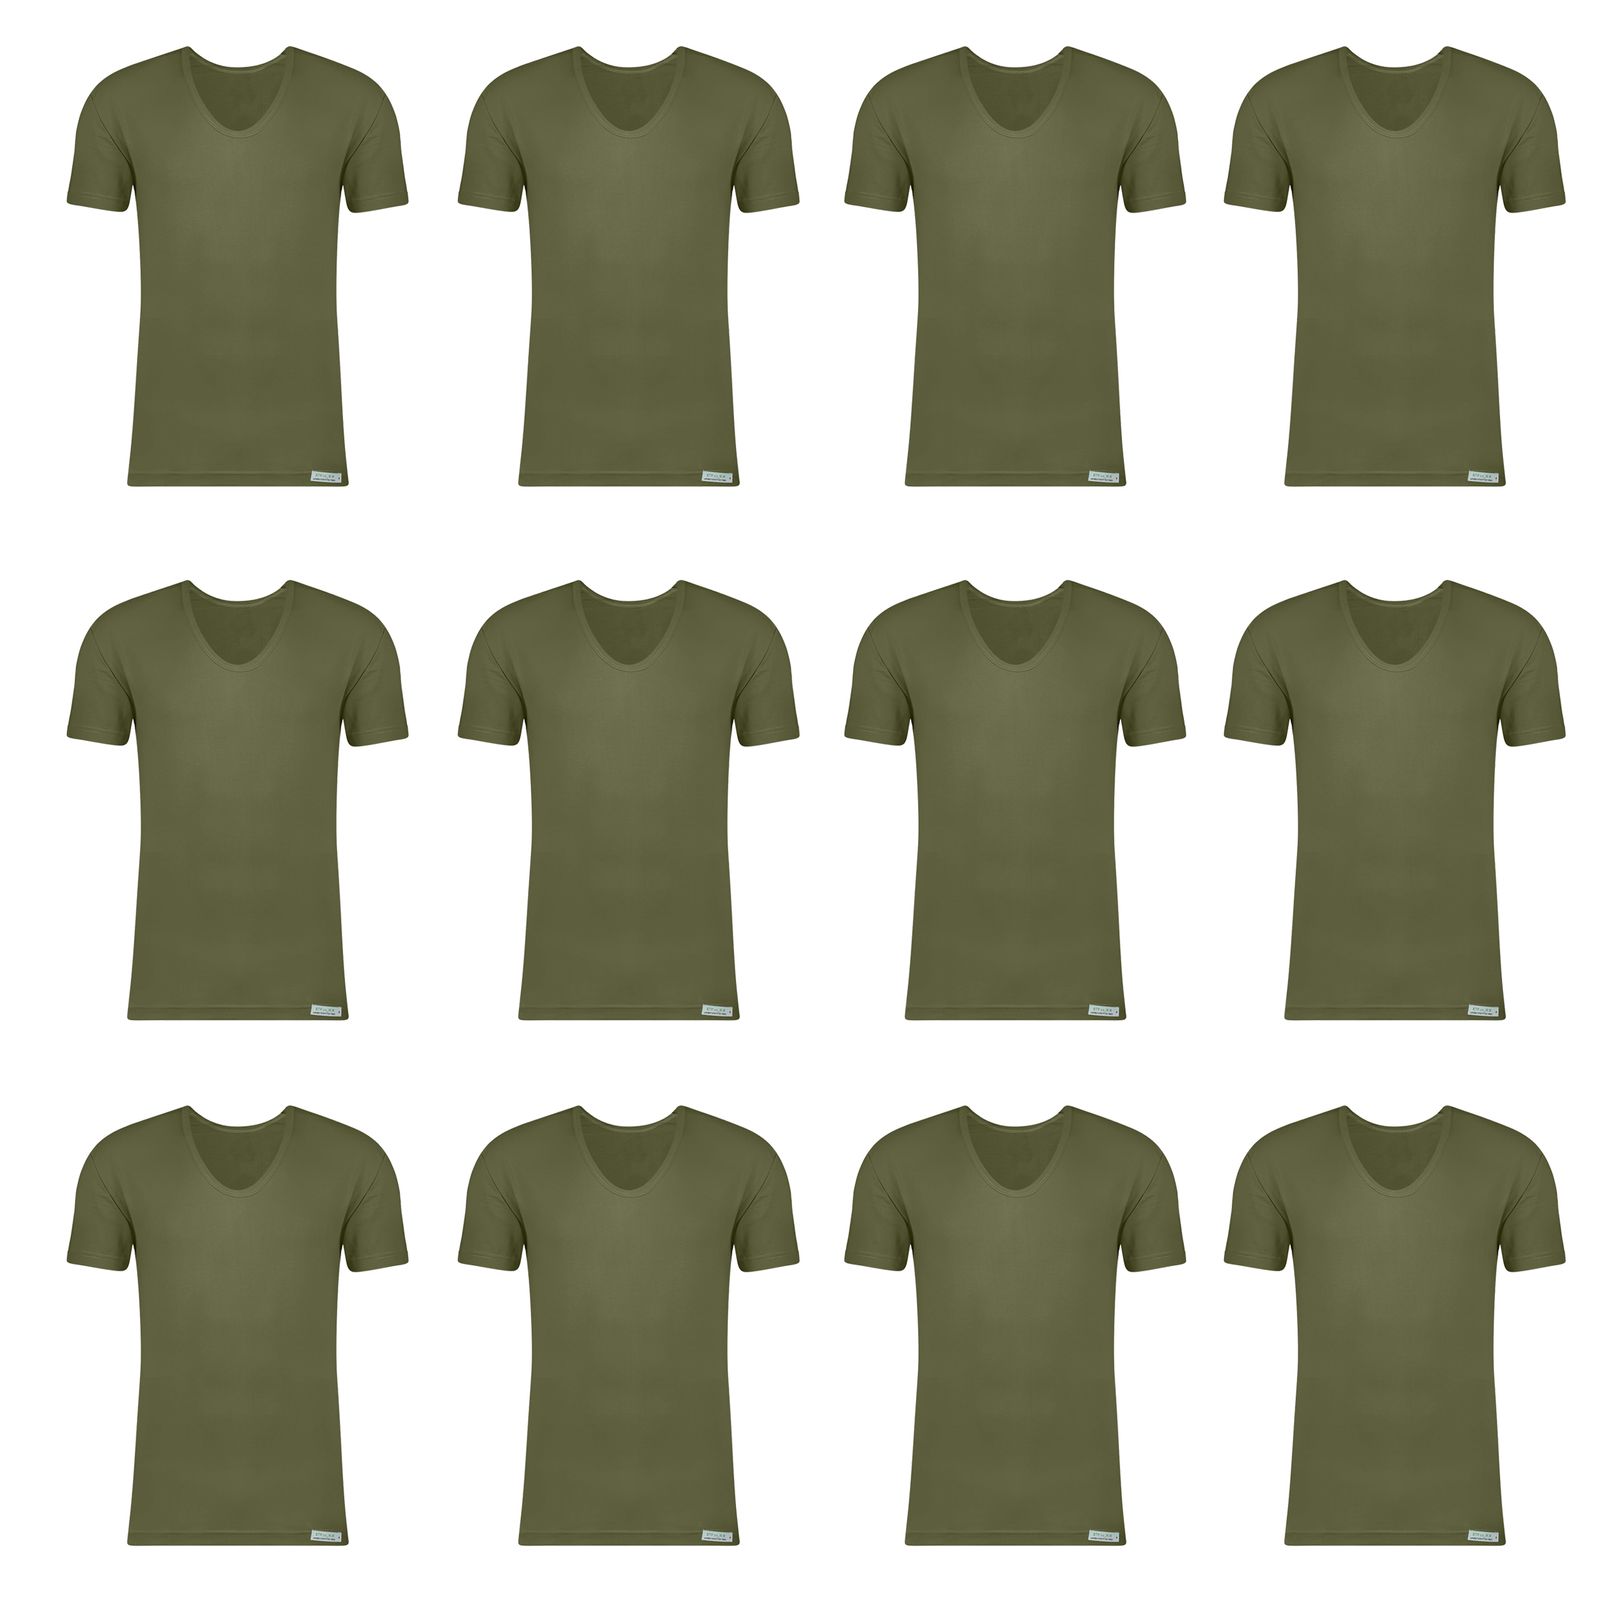 زیرپوش آستین دار مردانه برهان تن پوش مدل 6-02 بسته 12 عددی رنگ سبز